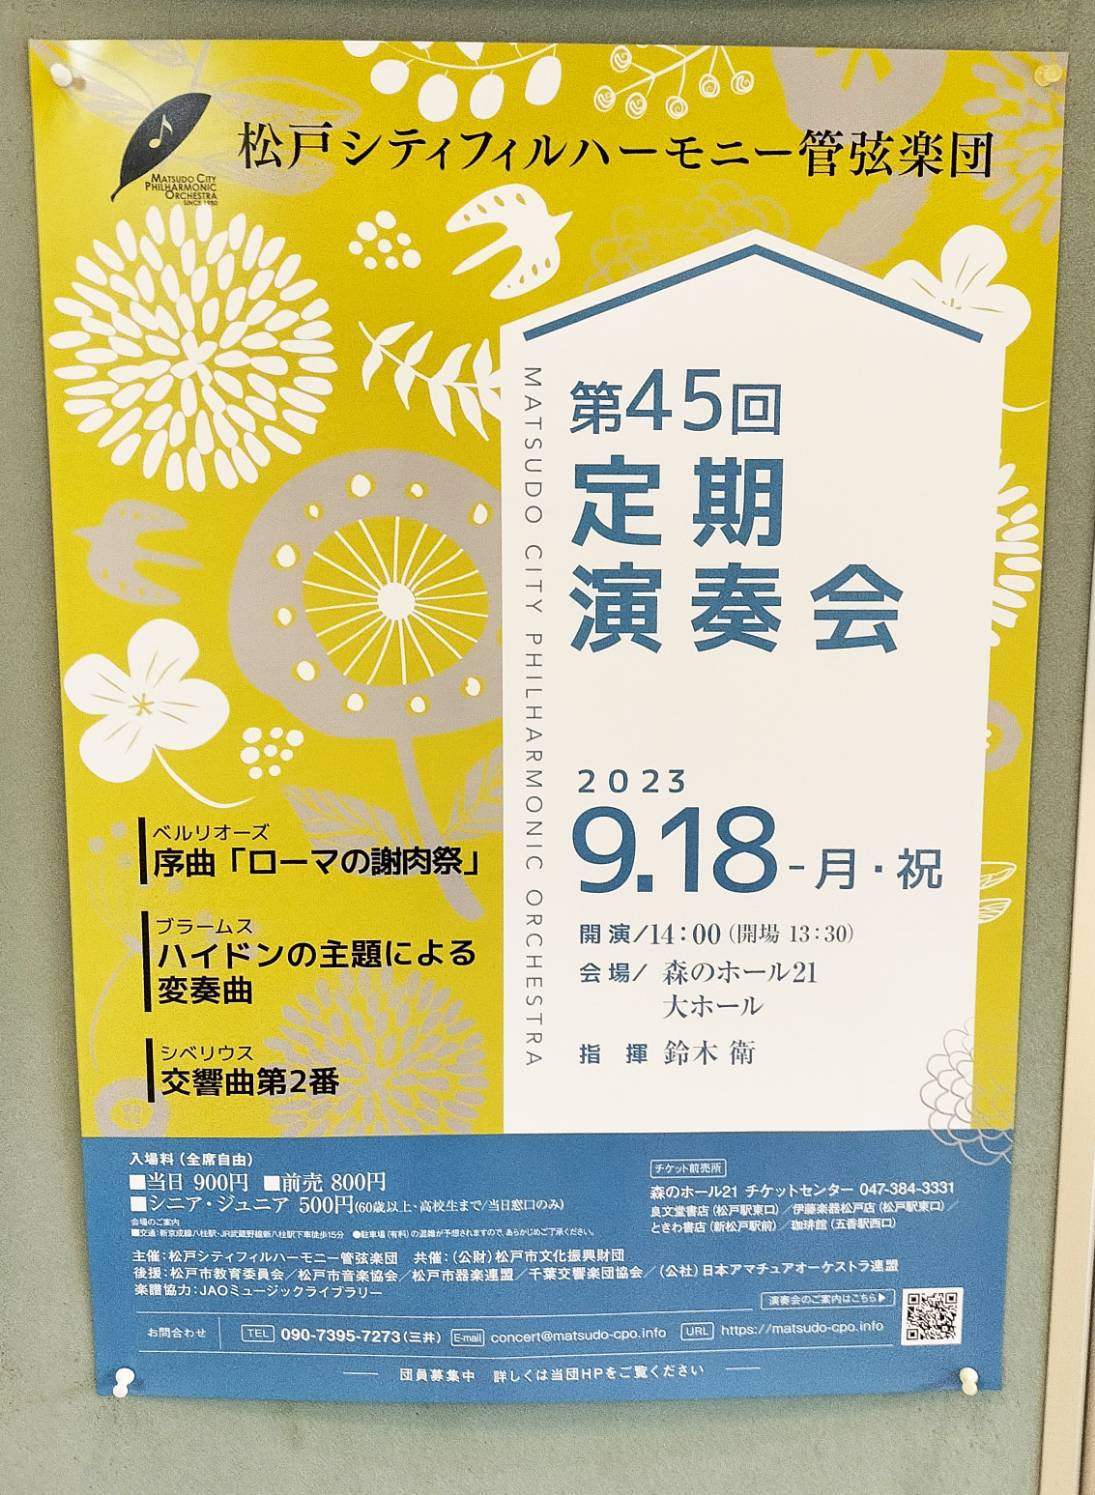 松戸シティフィルハーモニー 管弦楽団 第45回定期演奏会森のホール21